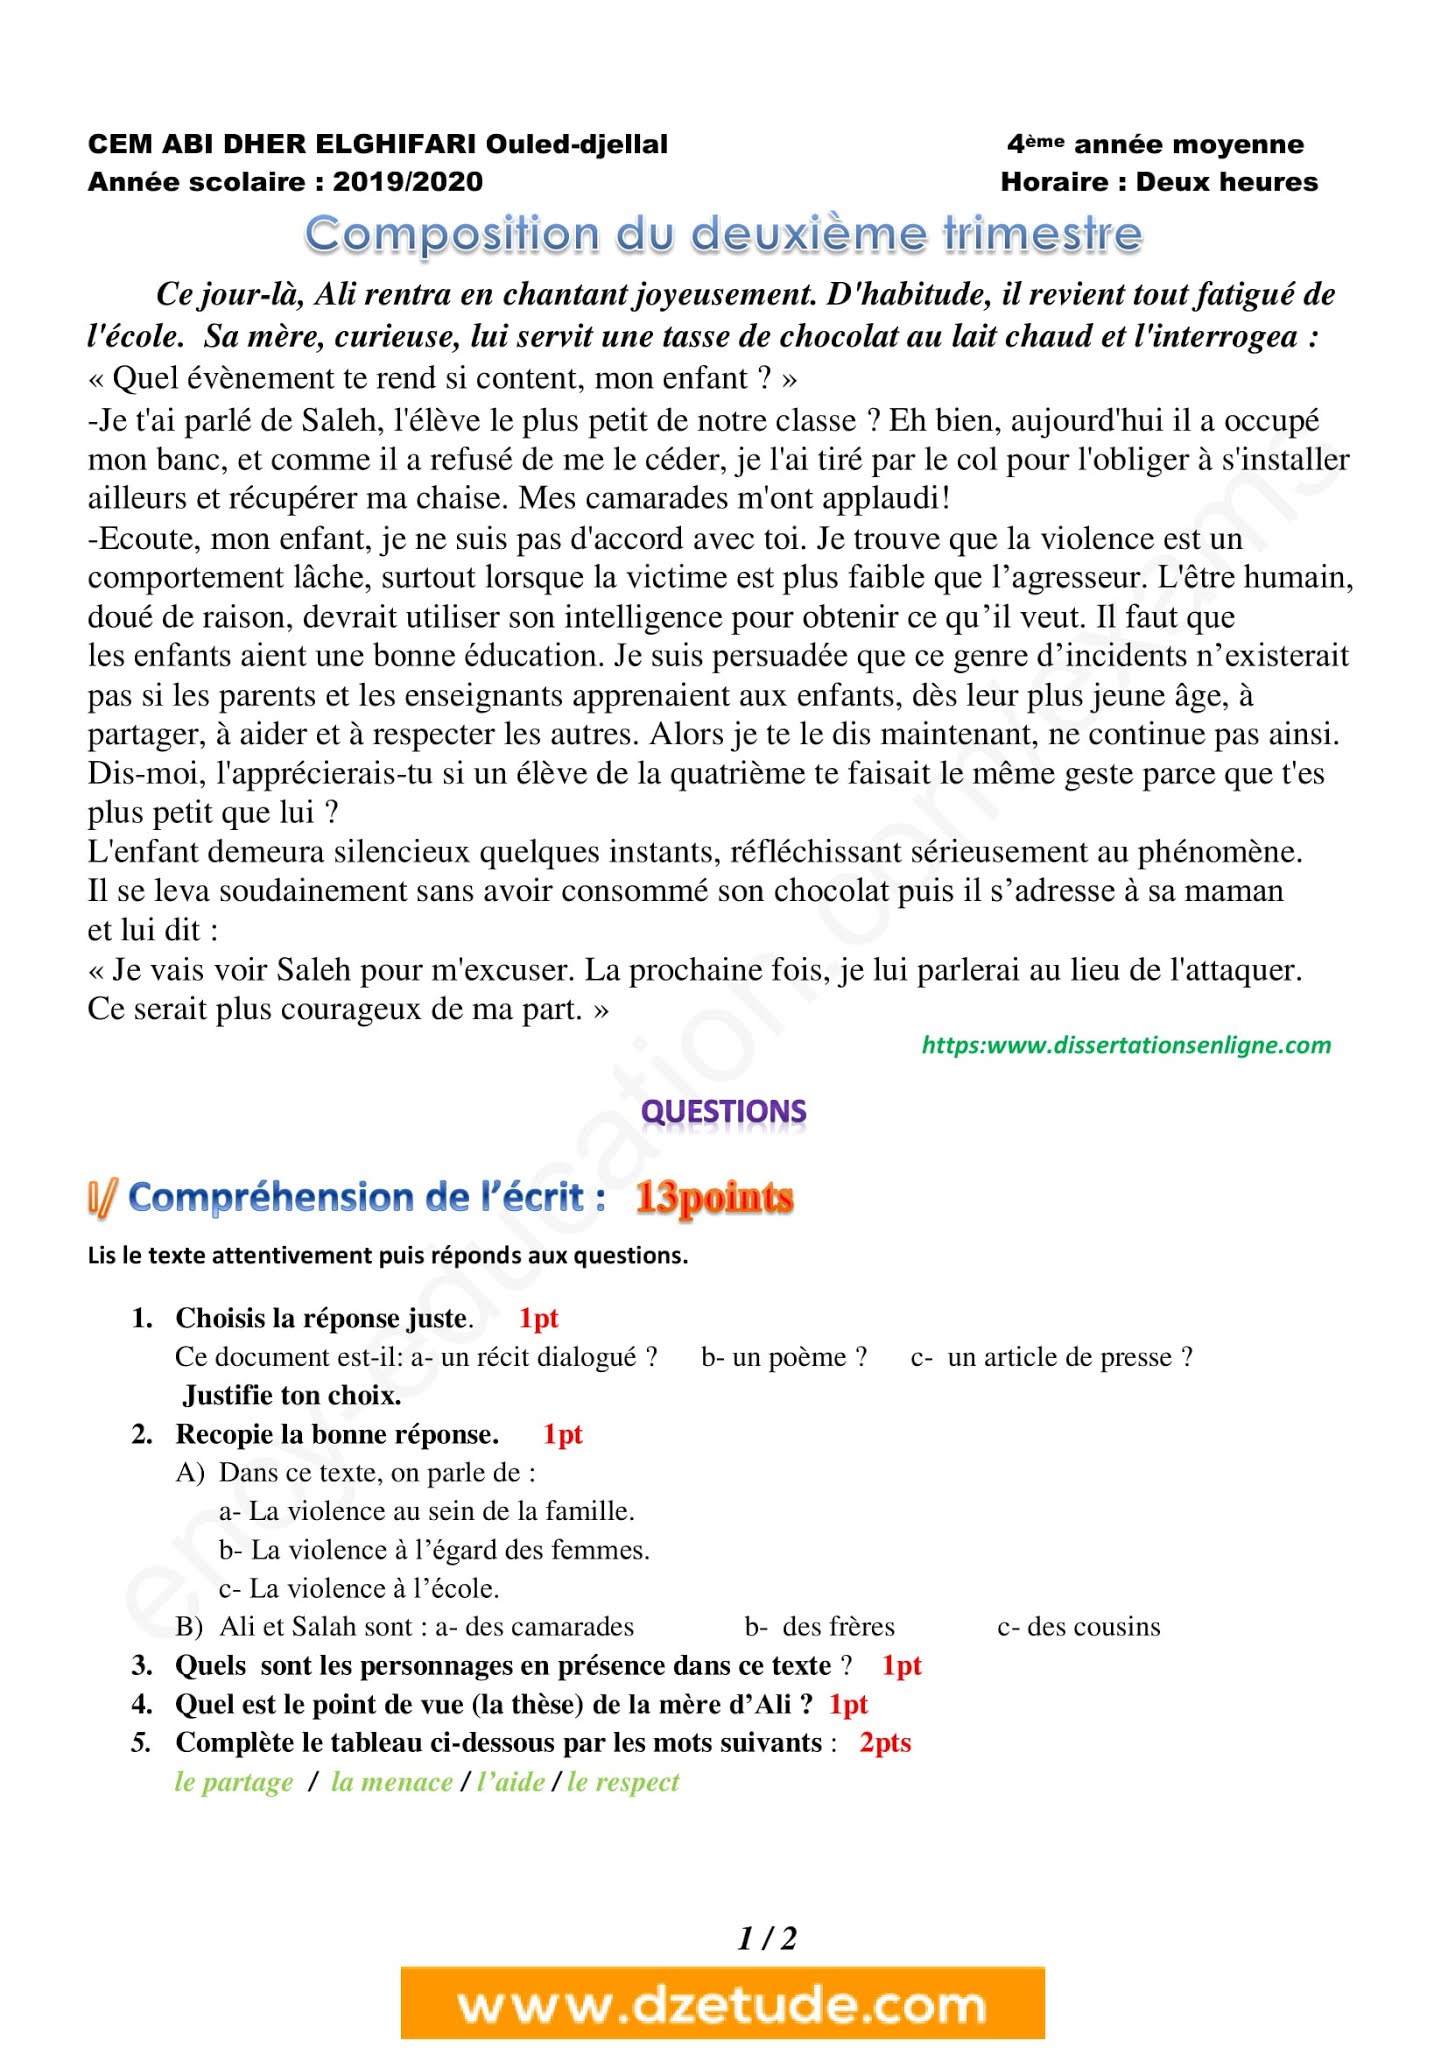 إختبار اللغة الفرنسية الفصل الثاني للسنة الرابعة متوسط - الجيل الثاني نموذج 9